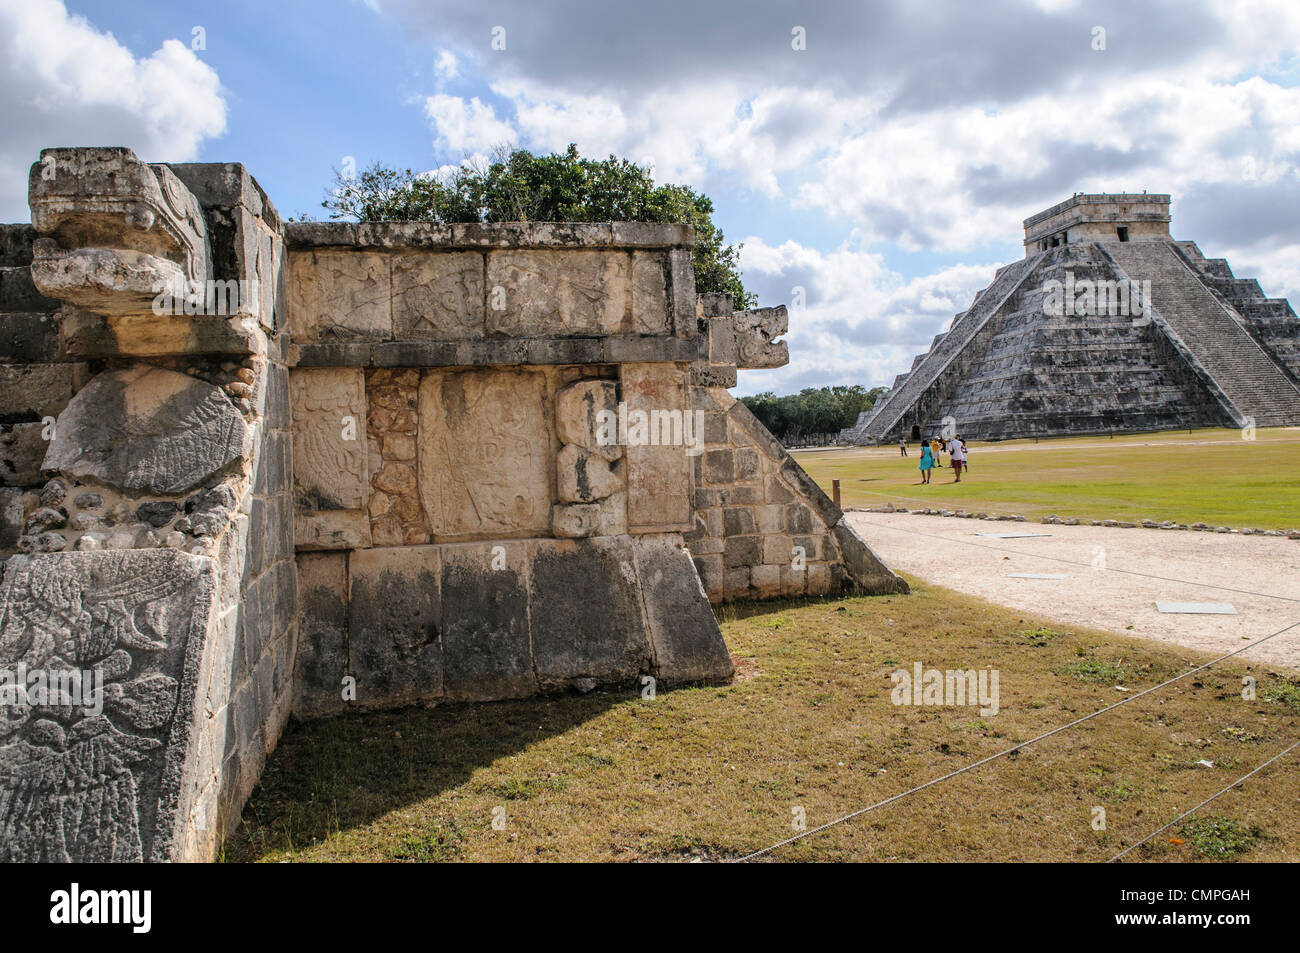 CHICHEN ITZA, Mexique - Buiding en face de Temple de Kukulkan (El Castillo) à la Zone archéologique de Chichen Itza, les ruines d'une importante ville de la civilisation Maya au coeur de la péninsule du Yucatan au Mexique. Banque D'Images